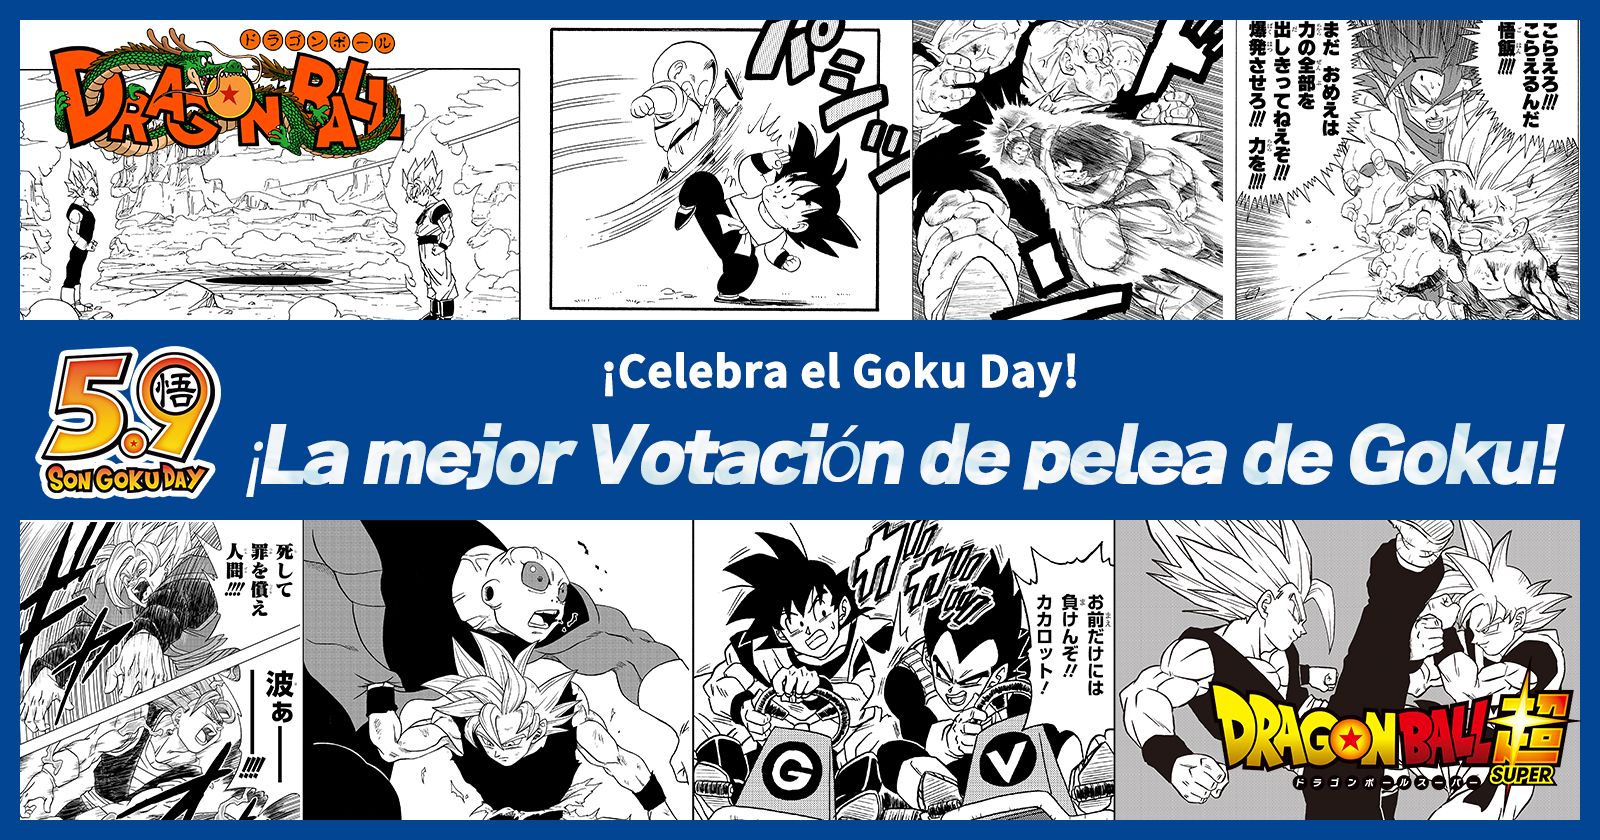 ¡El evento de celebración del Goku Day " La Votación sobre el mejor combate de Goku" ya está aquí! ¡La pelea por el primer lugar se convertirá en mercancía!